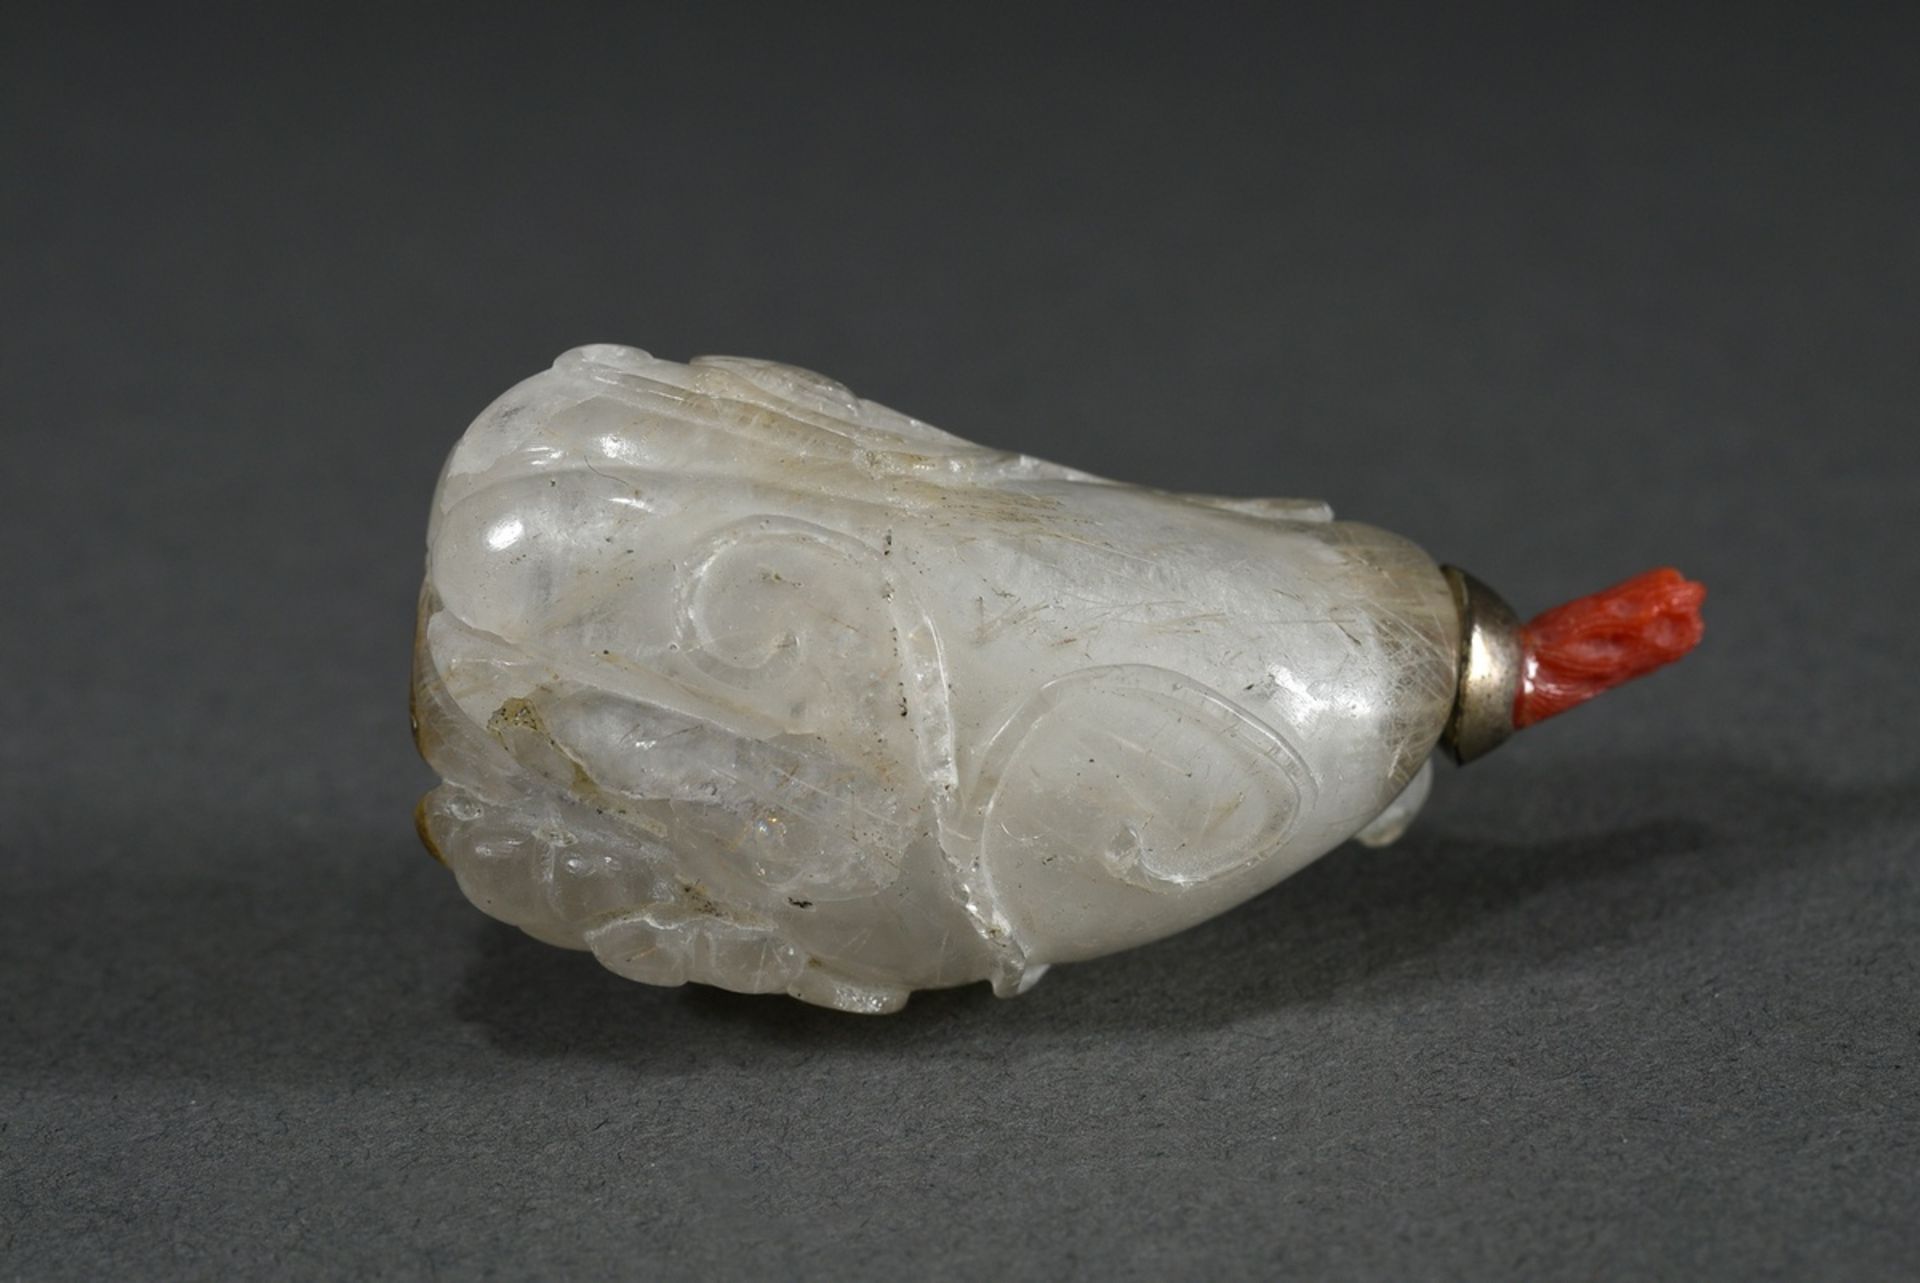 Sehr kleine Bergkristall Snuffbottle in Flaschenkürbis Form mit halbplastisch geschnitztem "Ranken"